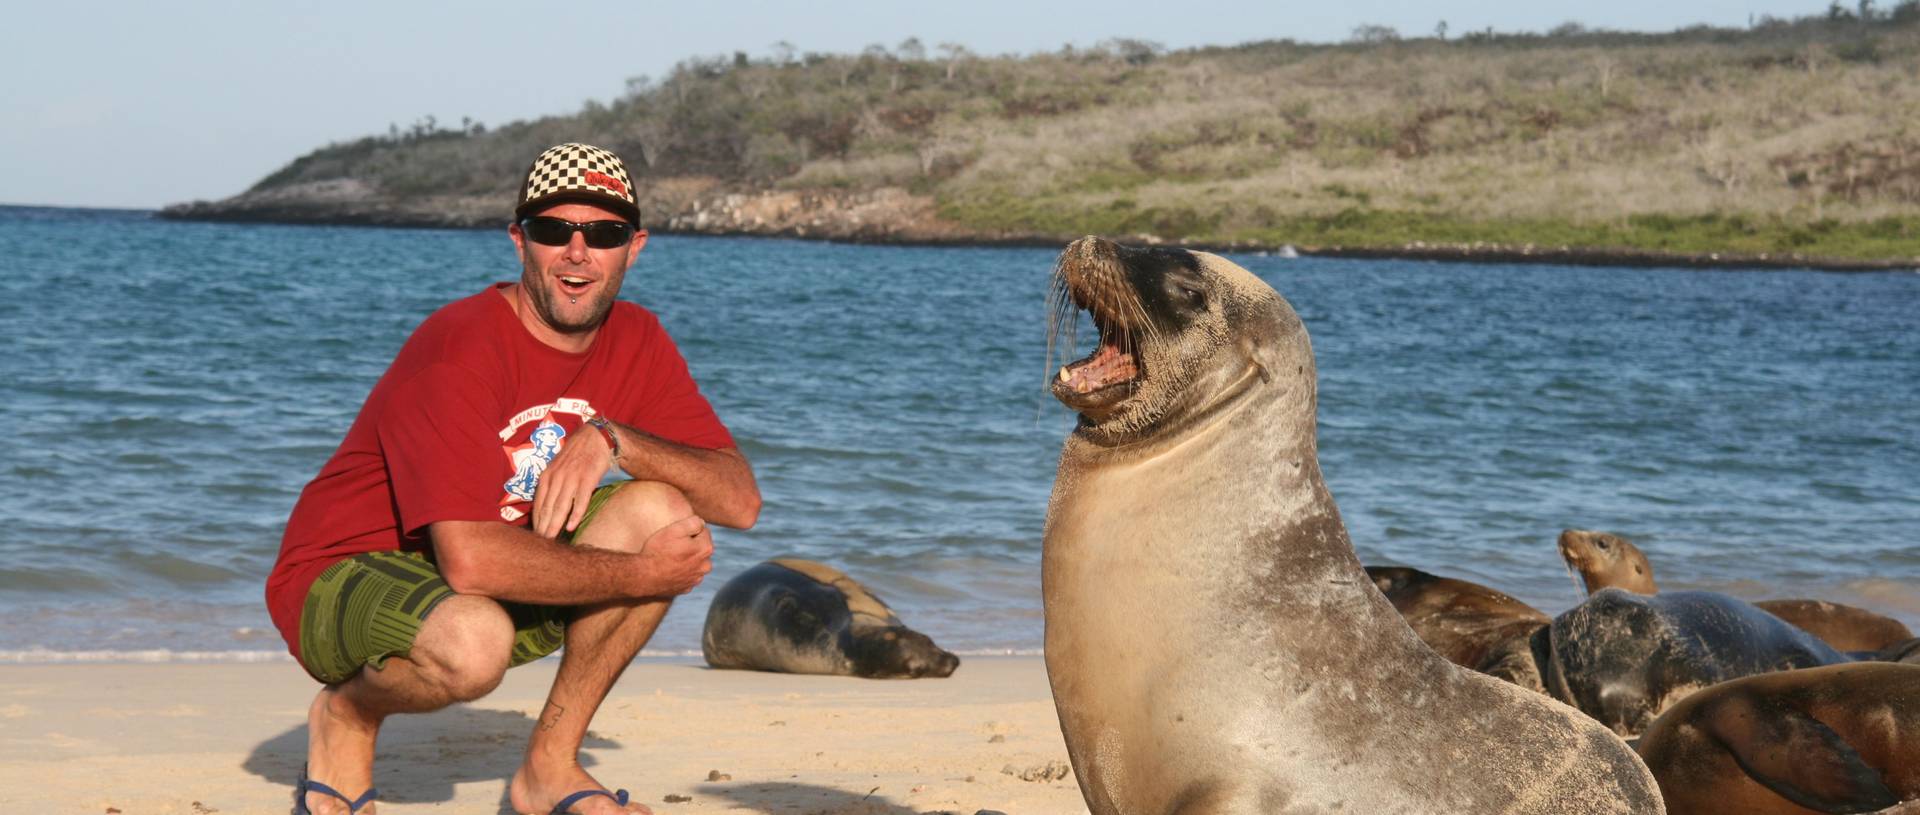 Seal Lion, Galapagos